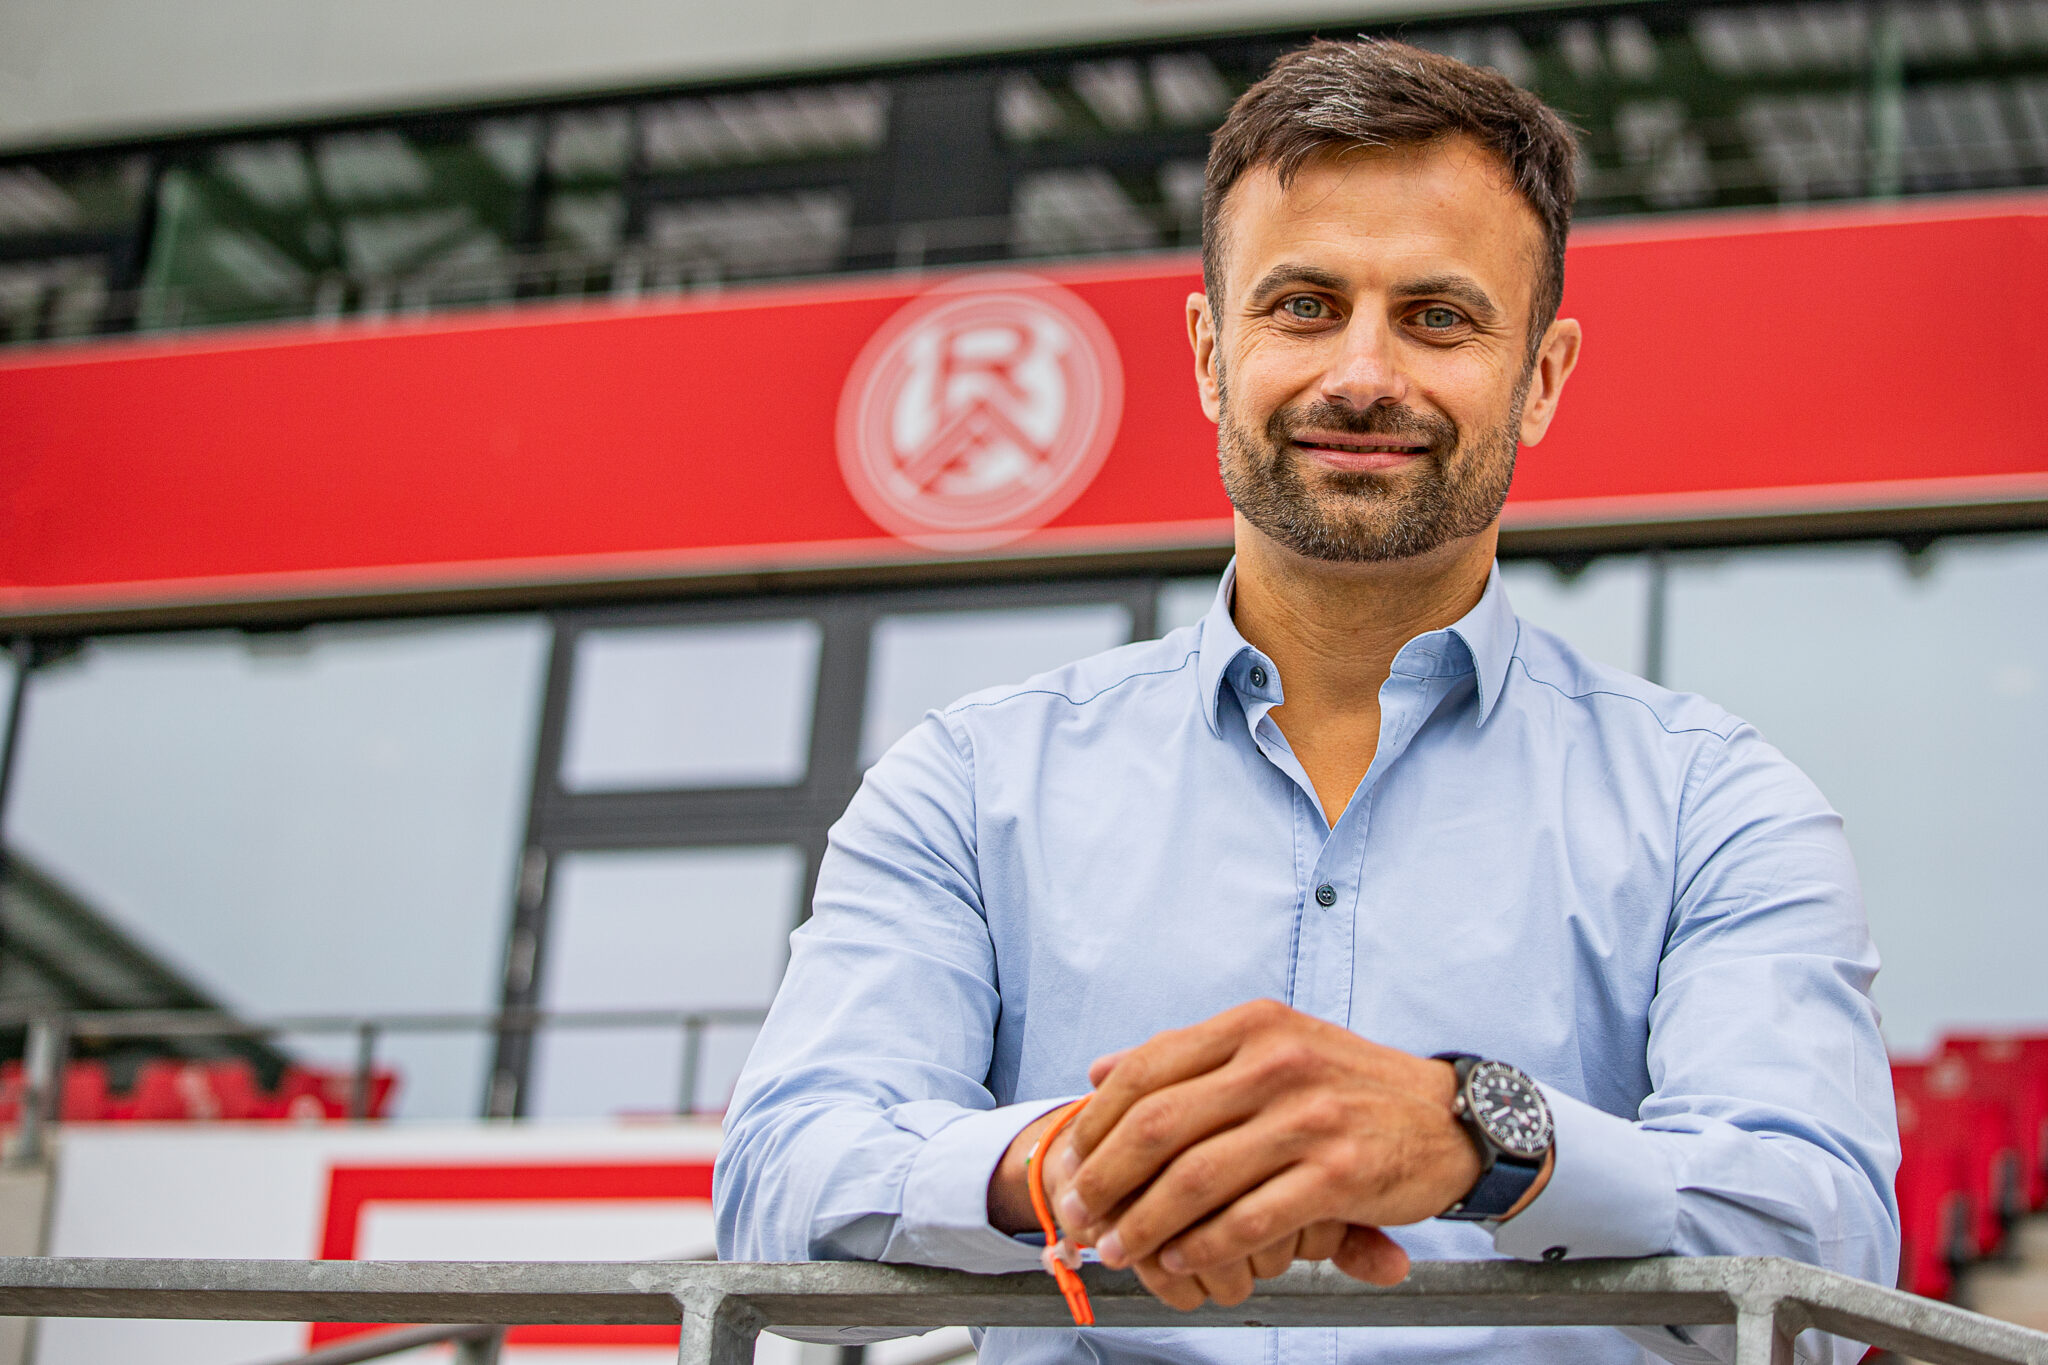 Für Rot-Weiss Essen-Vertriebsvorstand Alexander Rang ist Kommunikation ein "wesentlicher Erfolgsfaktor". (Foto: RWE)